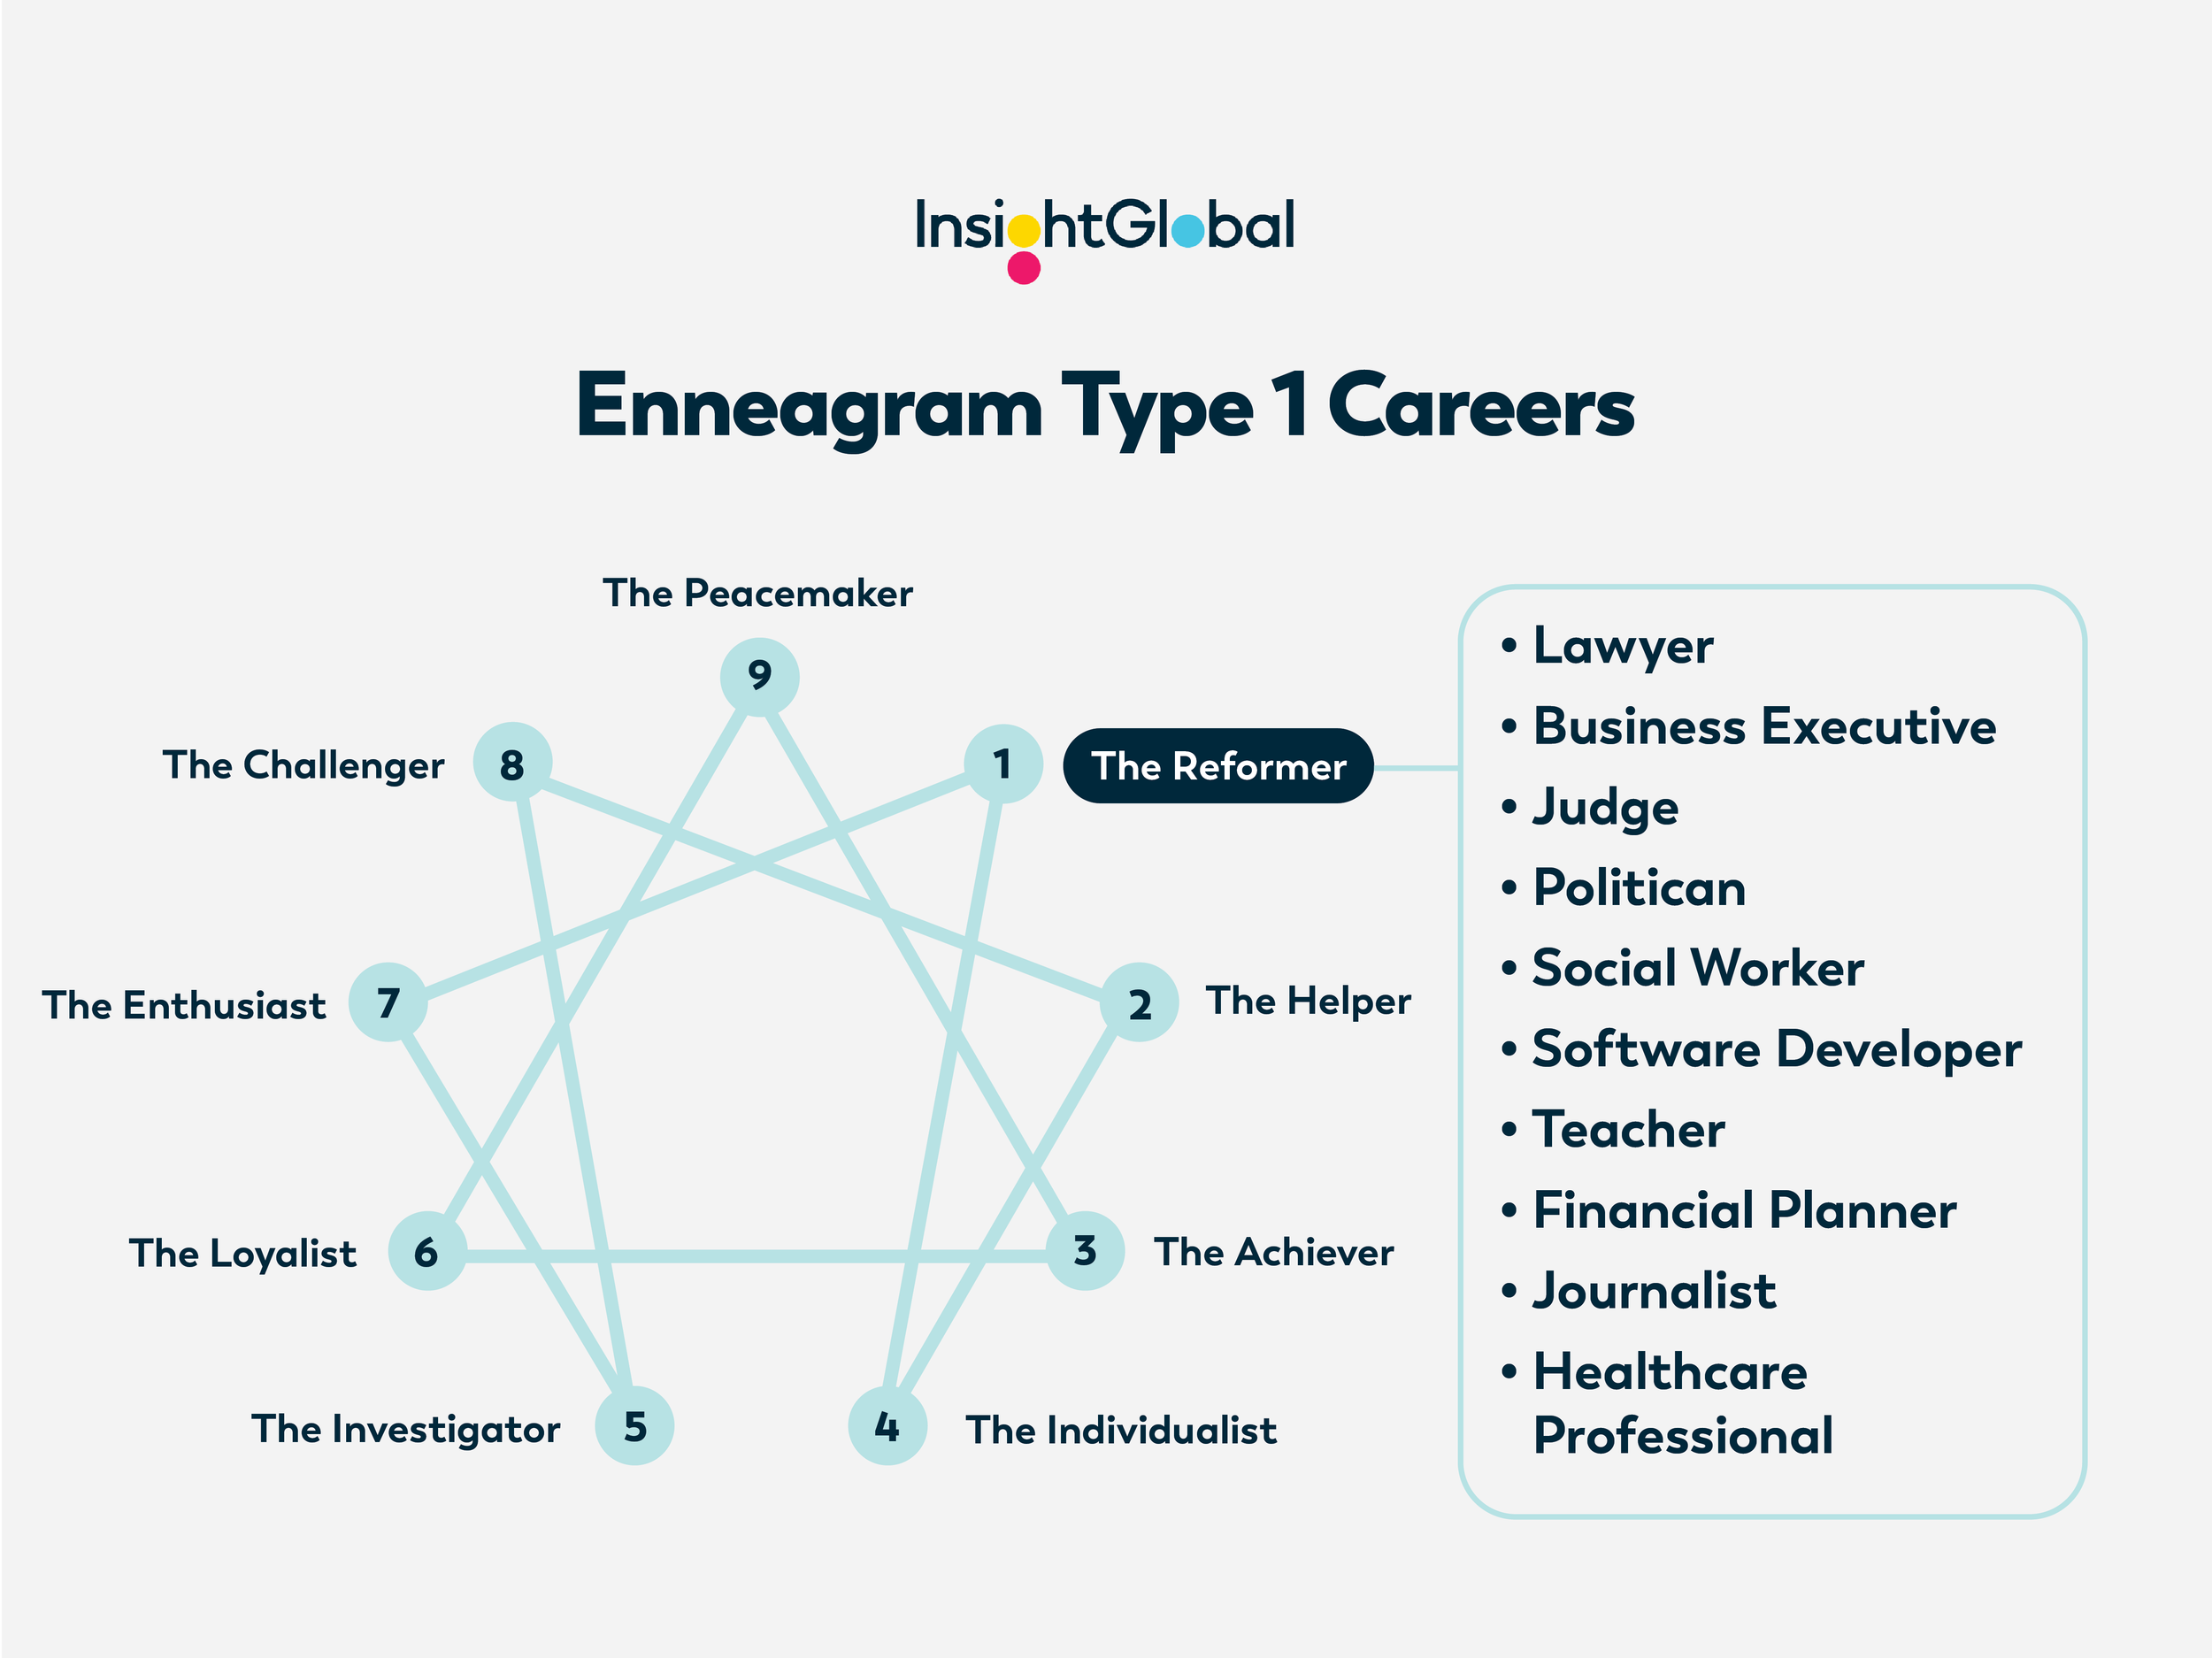 IG23-5xBlog-Enneagram 1 Careers_Final.png